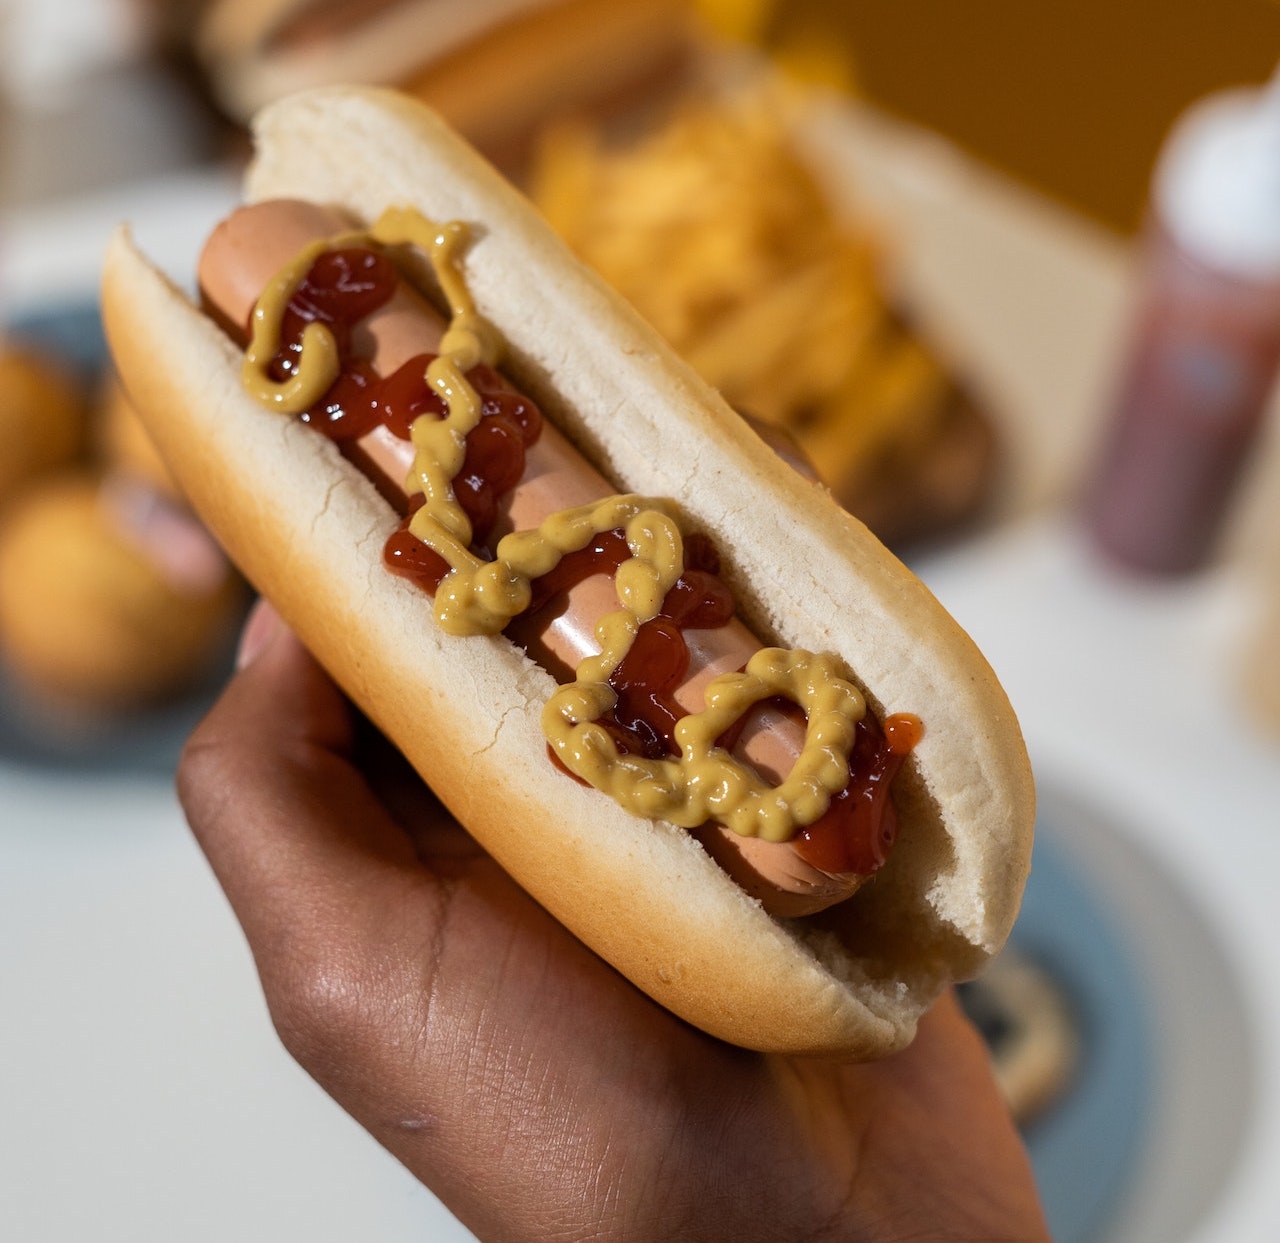 Fenway Park Hot dog